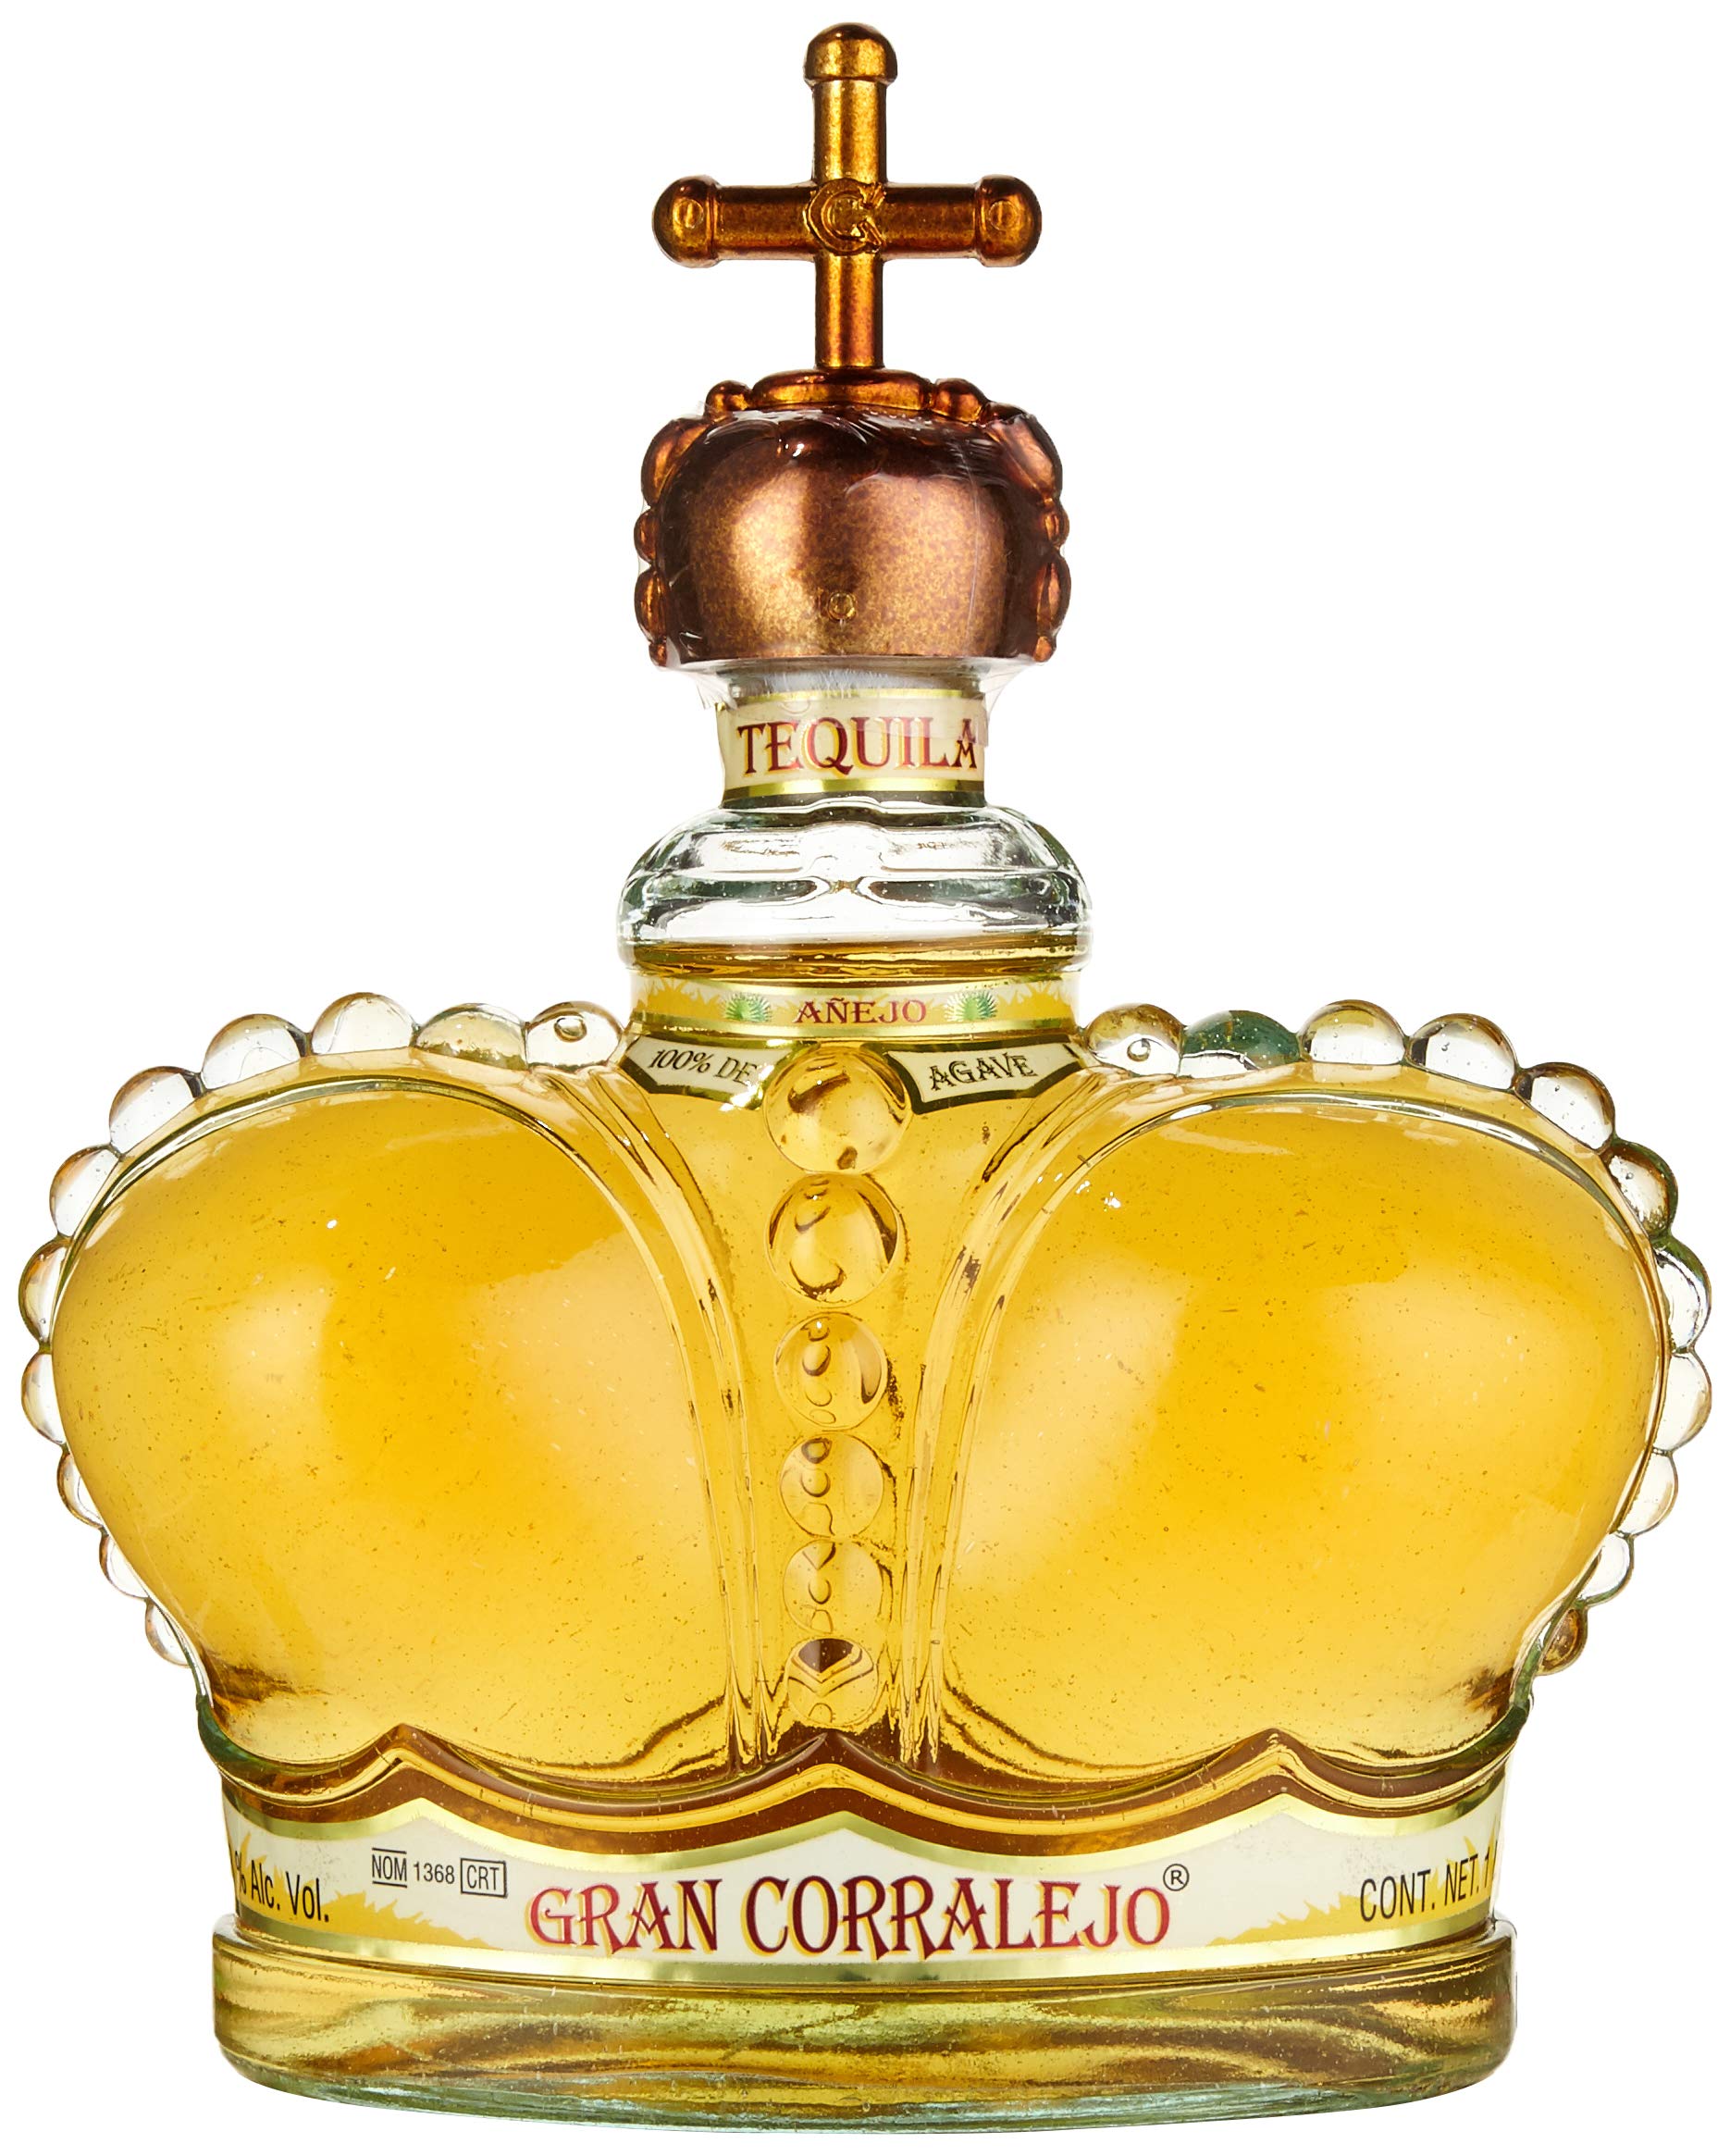 Corralejo Tequila Gran Corralejo | Premium Añejo Tequila | Zu 100% aus blauen Agaven | 12 Monate in Limousin-Eichen Fässern gelagert| Außergewöhnliches Flaschendesign | Glänzend goldene Farbe| 38% Vol. | 1000ML